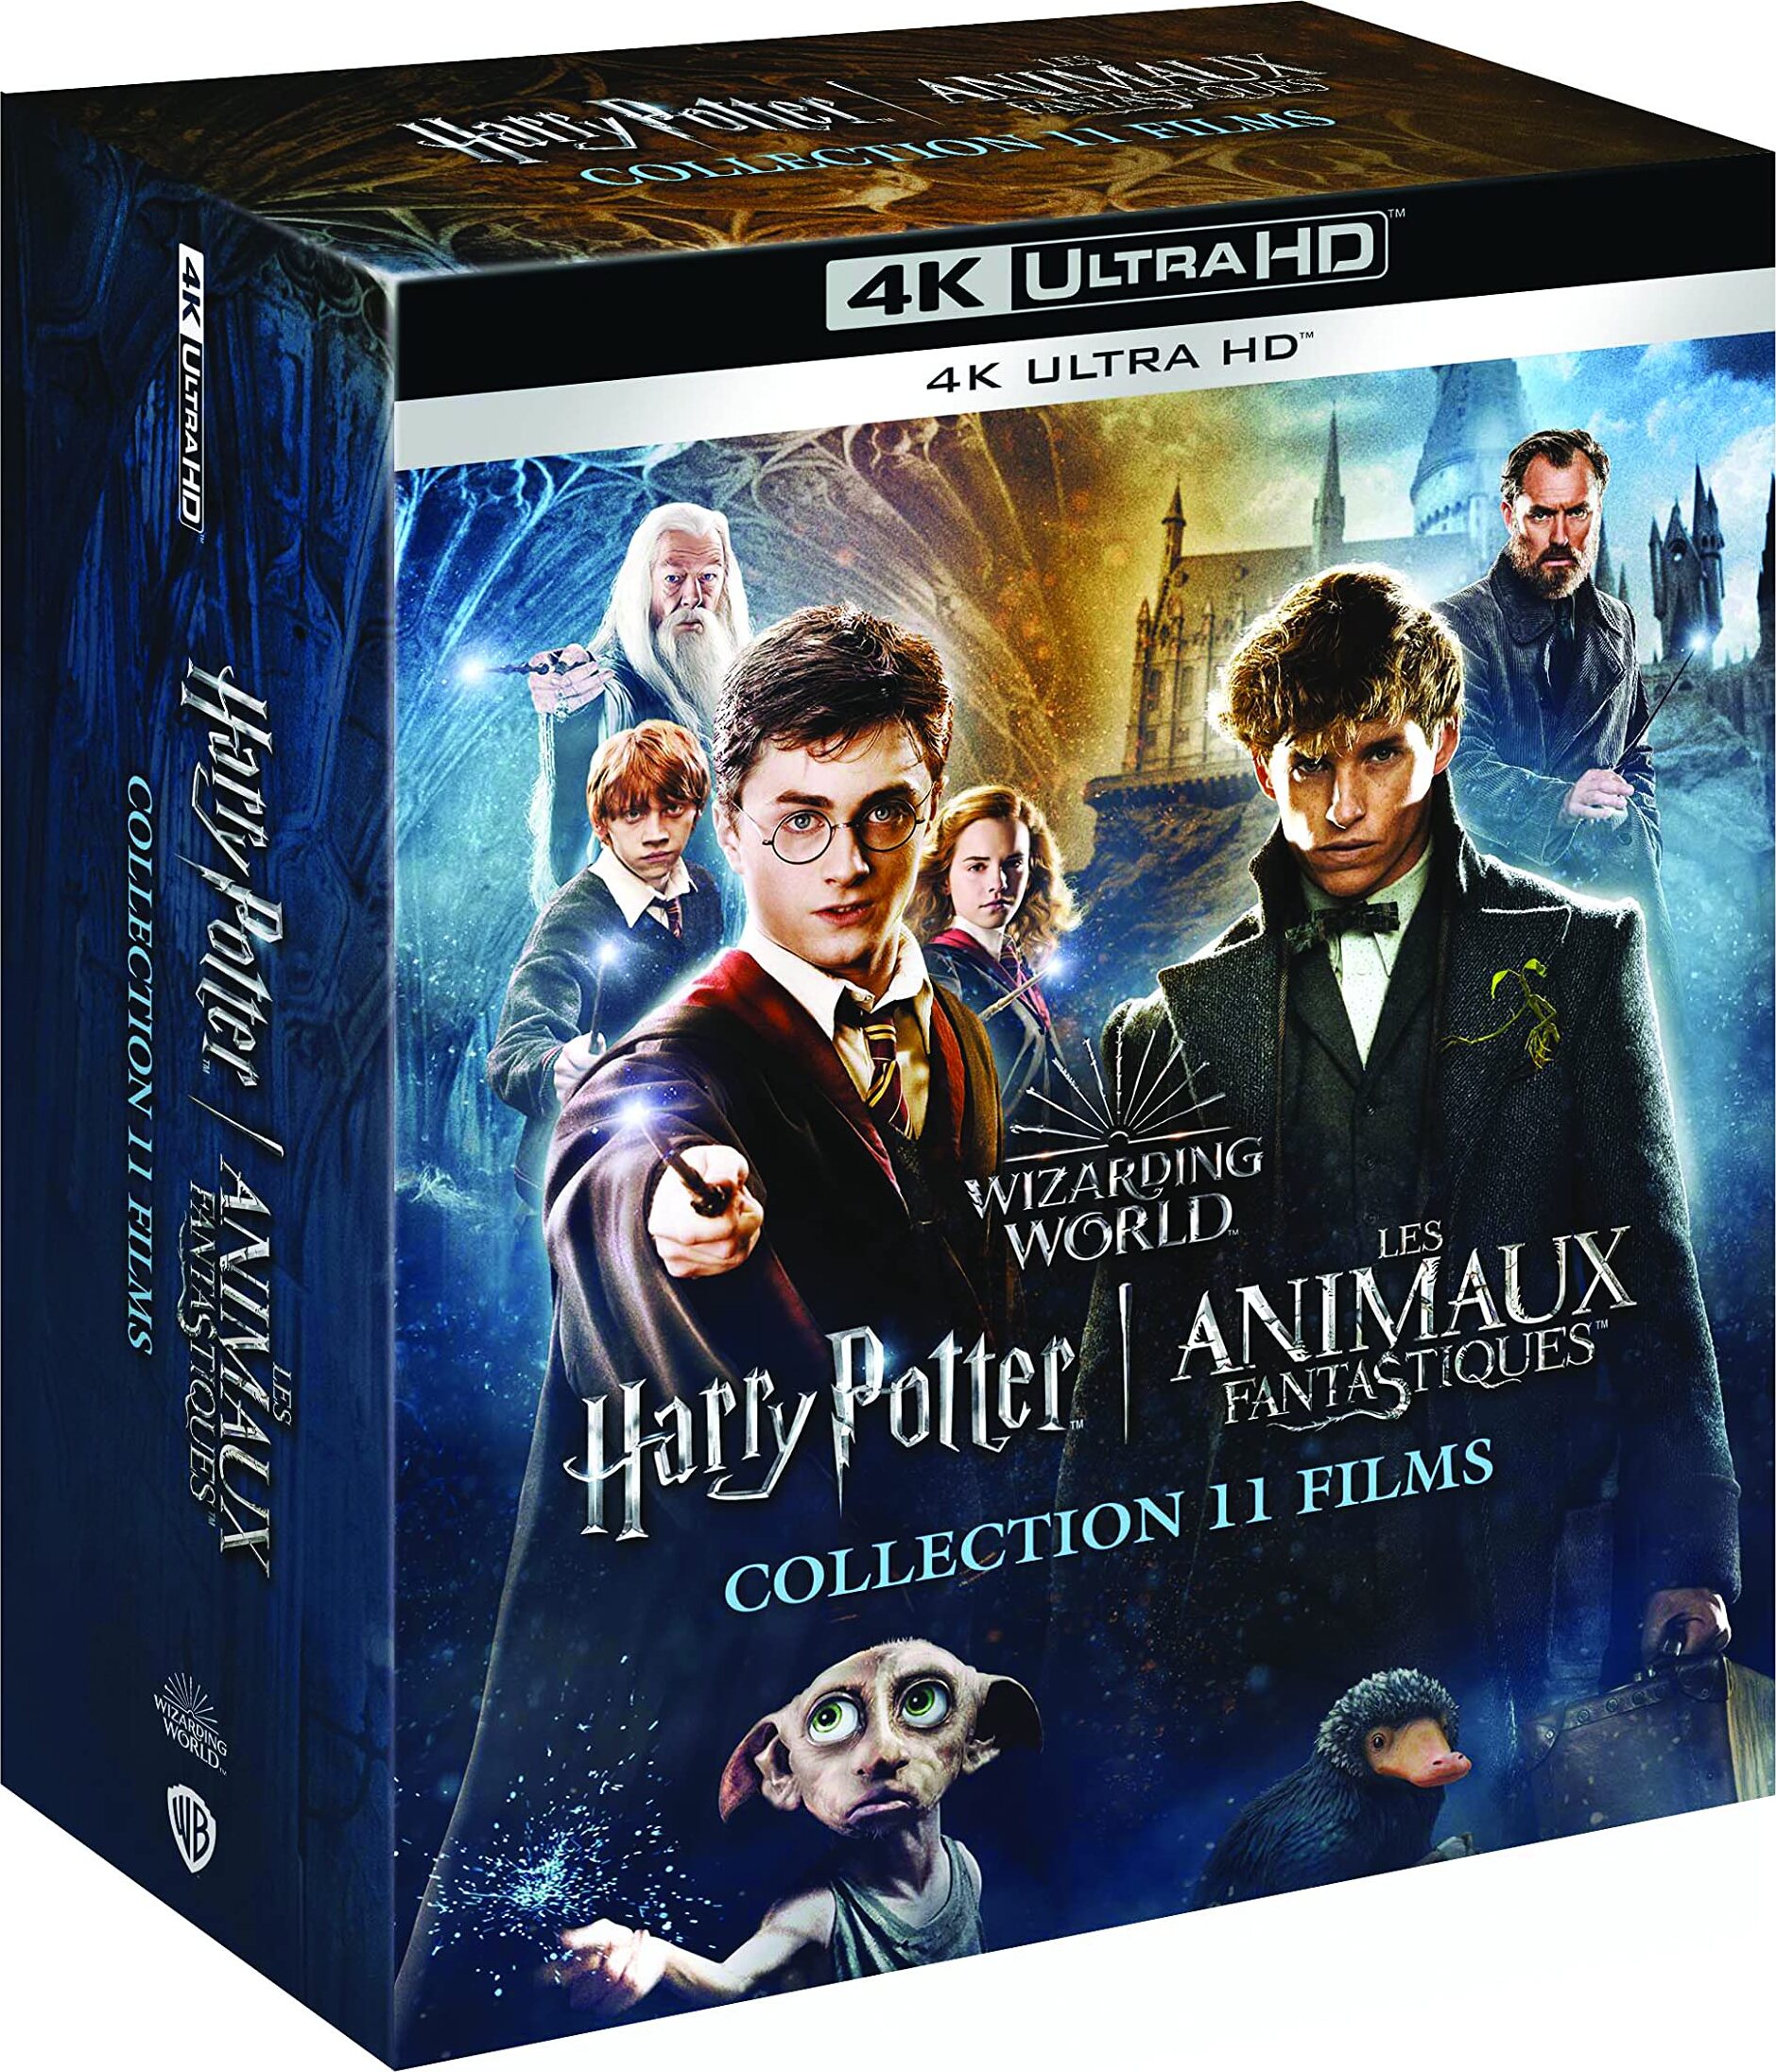 Harry Potter L'Intégrale 8 Blu-ray + 3 Blu-Ray Bonus